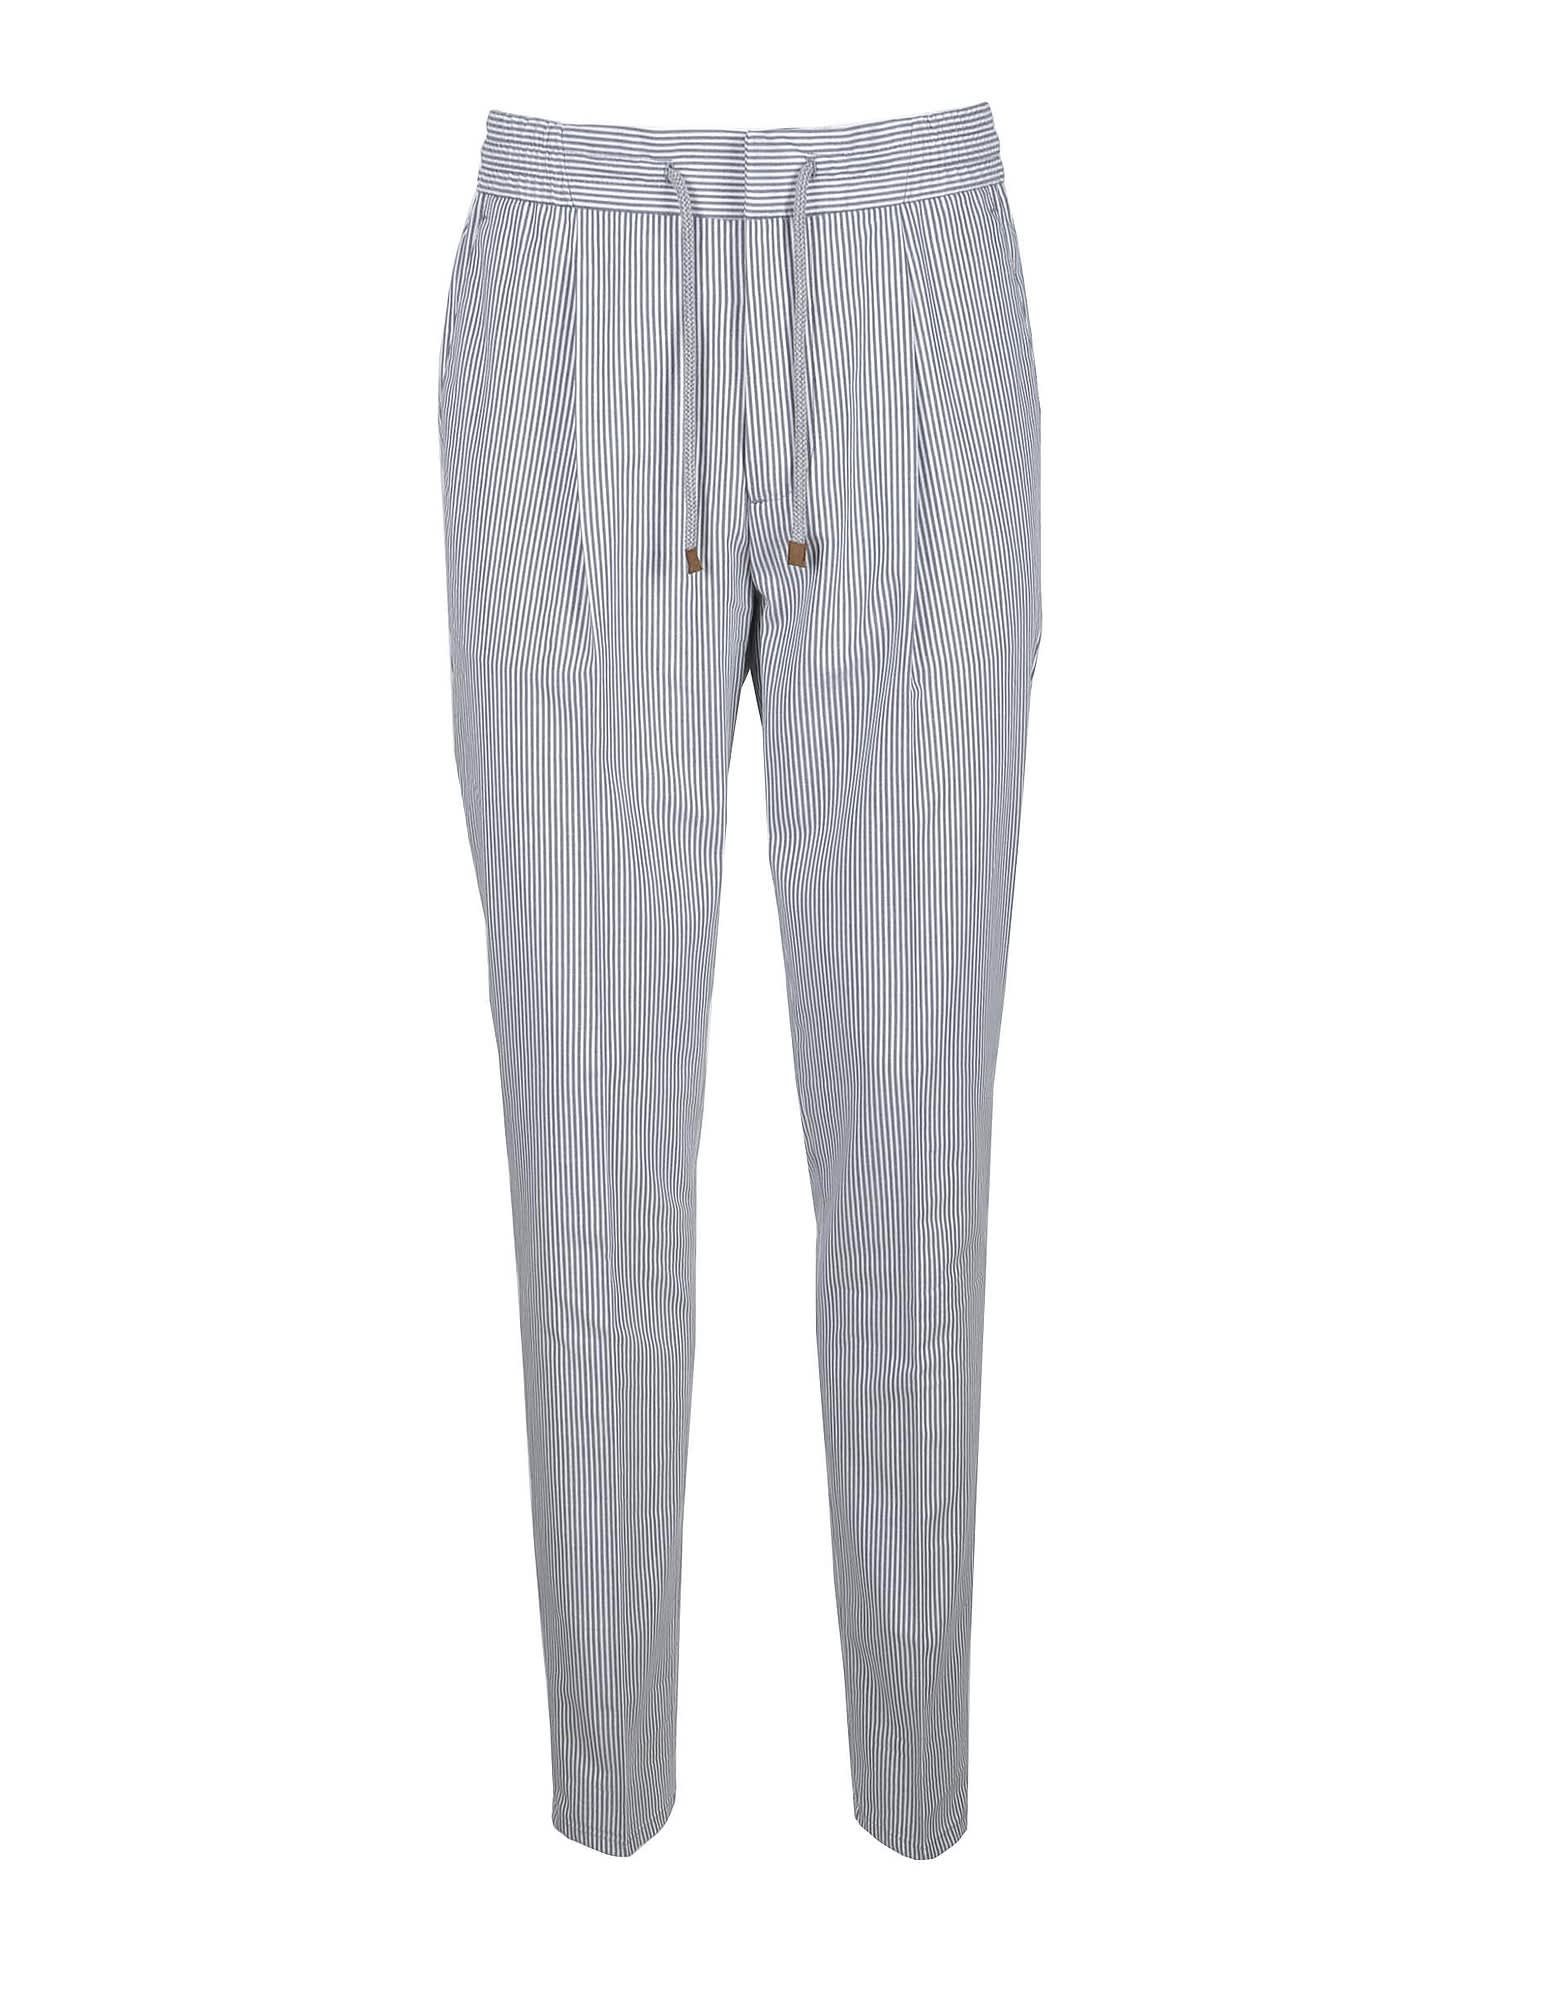 Brunello Cucinelli Mens White / Gray Pants